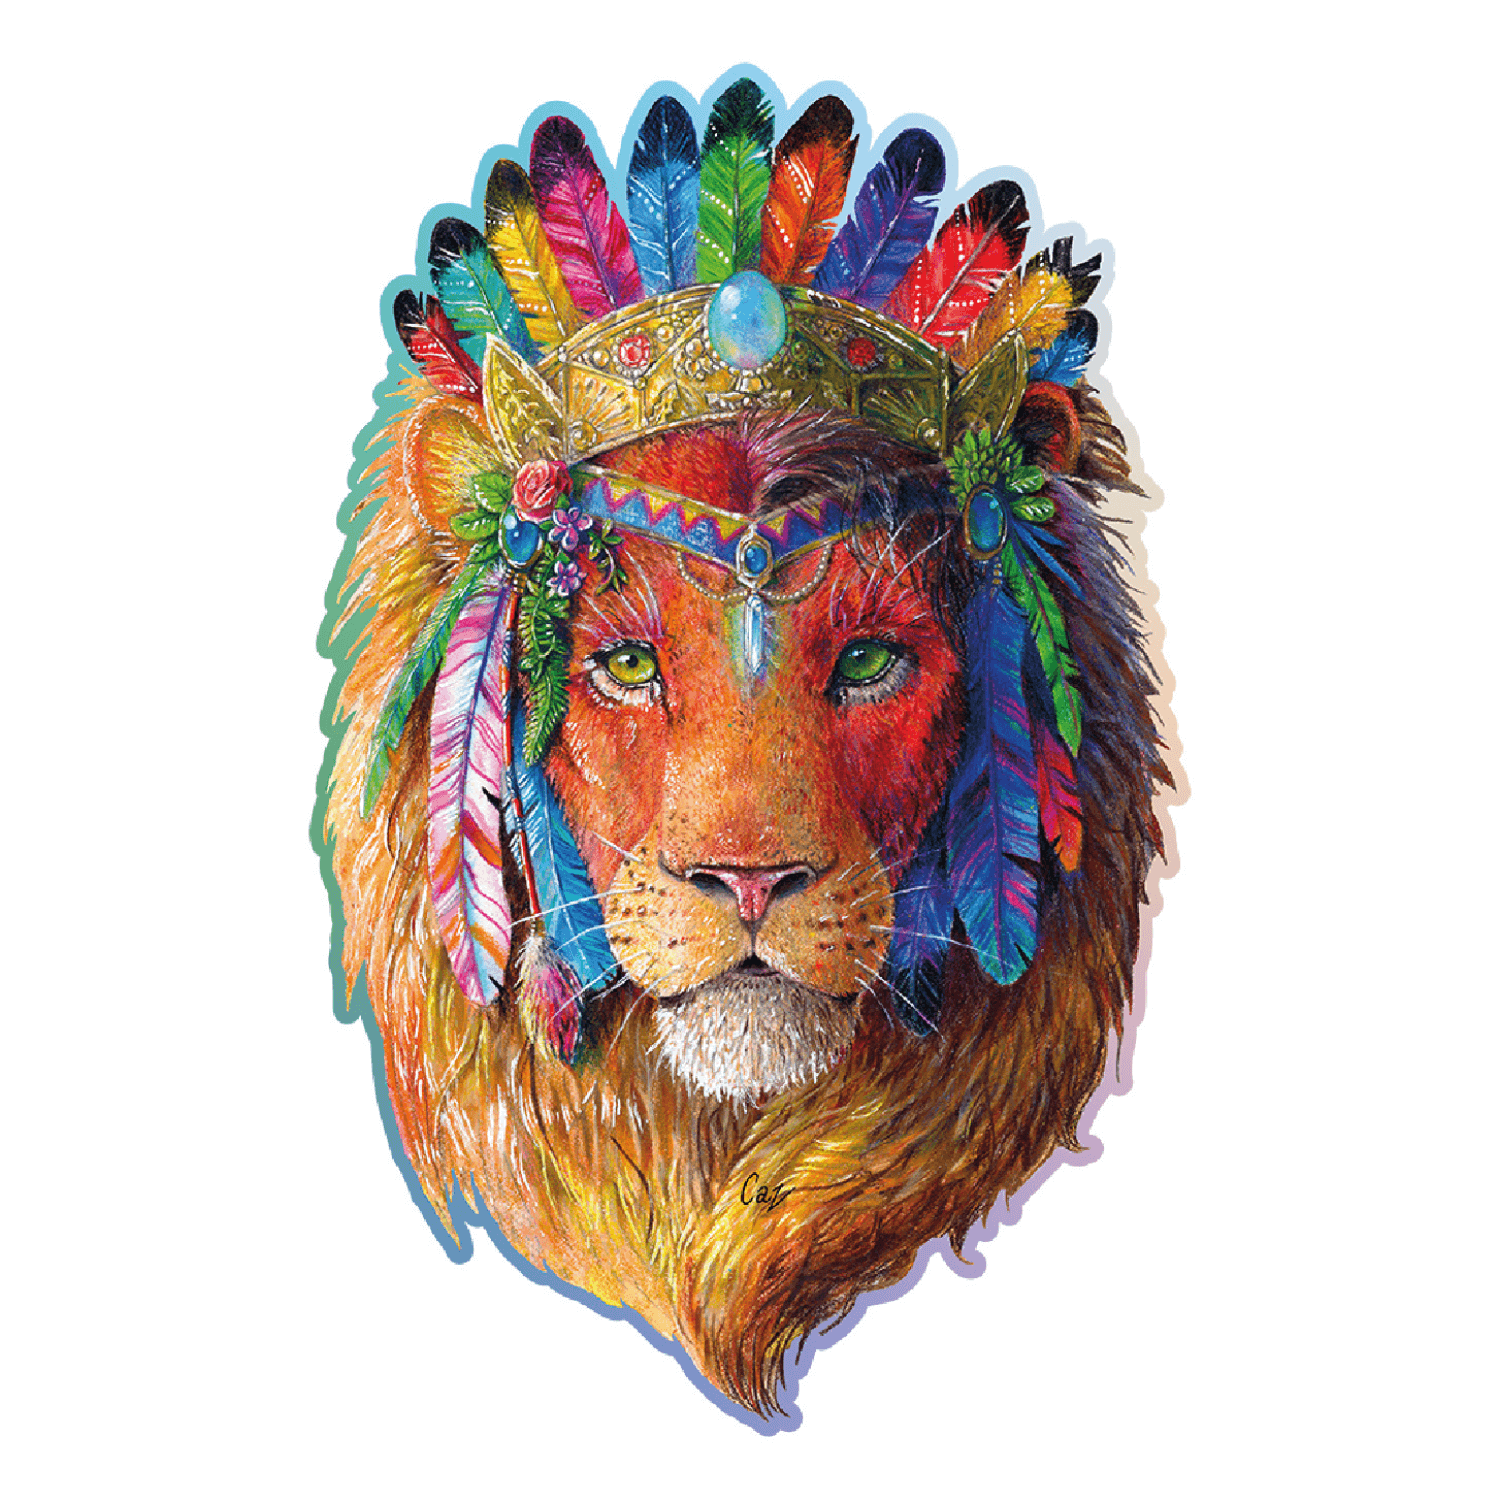 4 Puzzles - Le Roi Lion - 12 Teile - KING INTERNATIONAL Puzzle acheter en  ligne